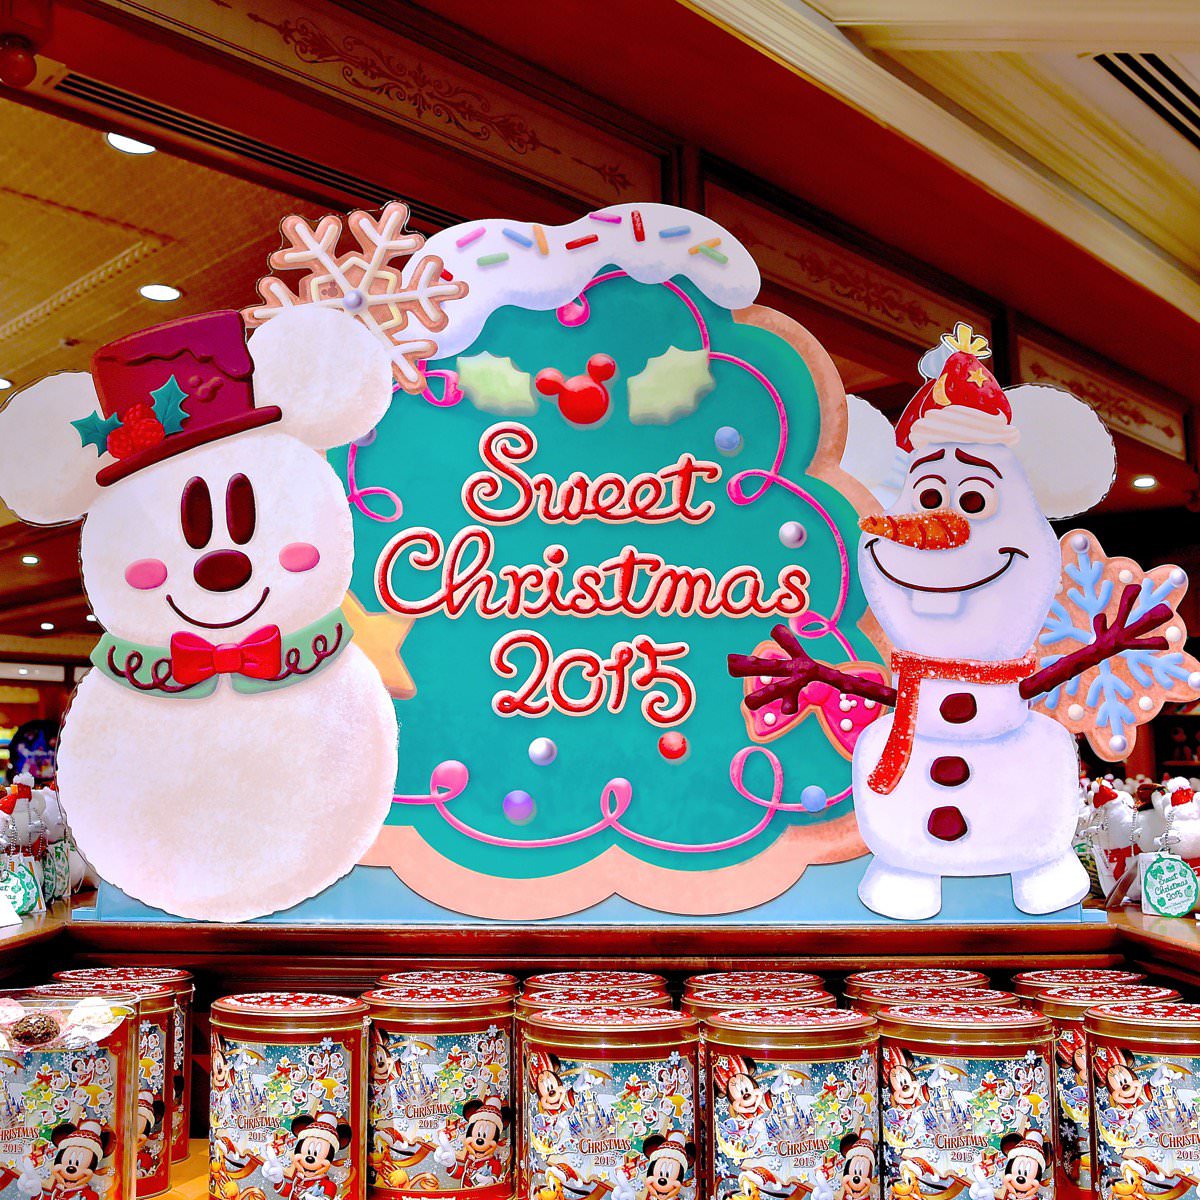 お菓子の世界のかわいいグッズ☆ディズニークリスマス2015両パーク共通